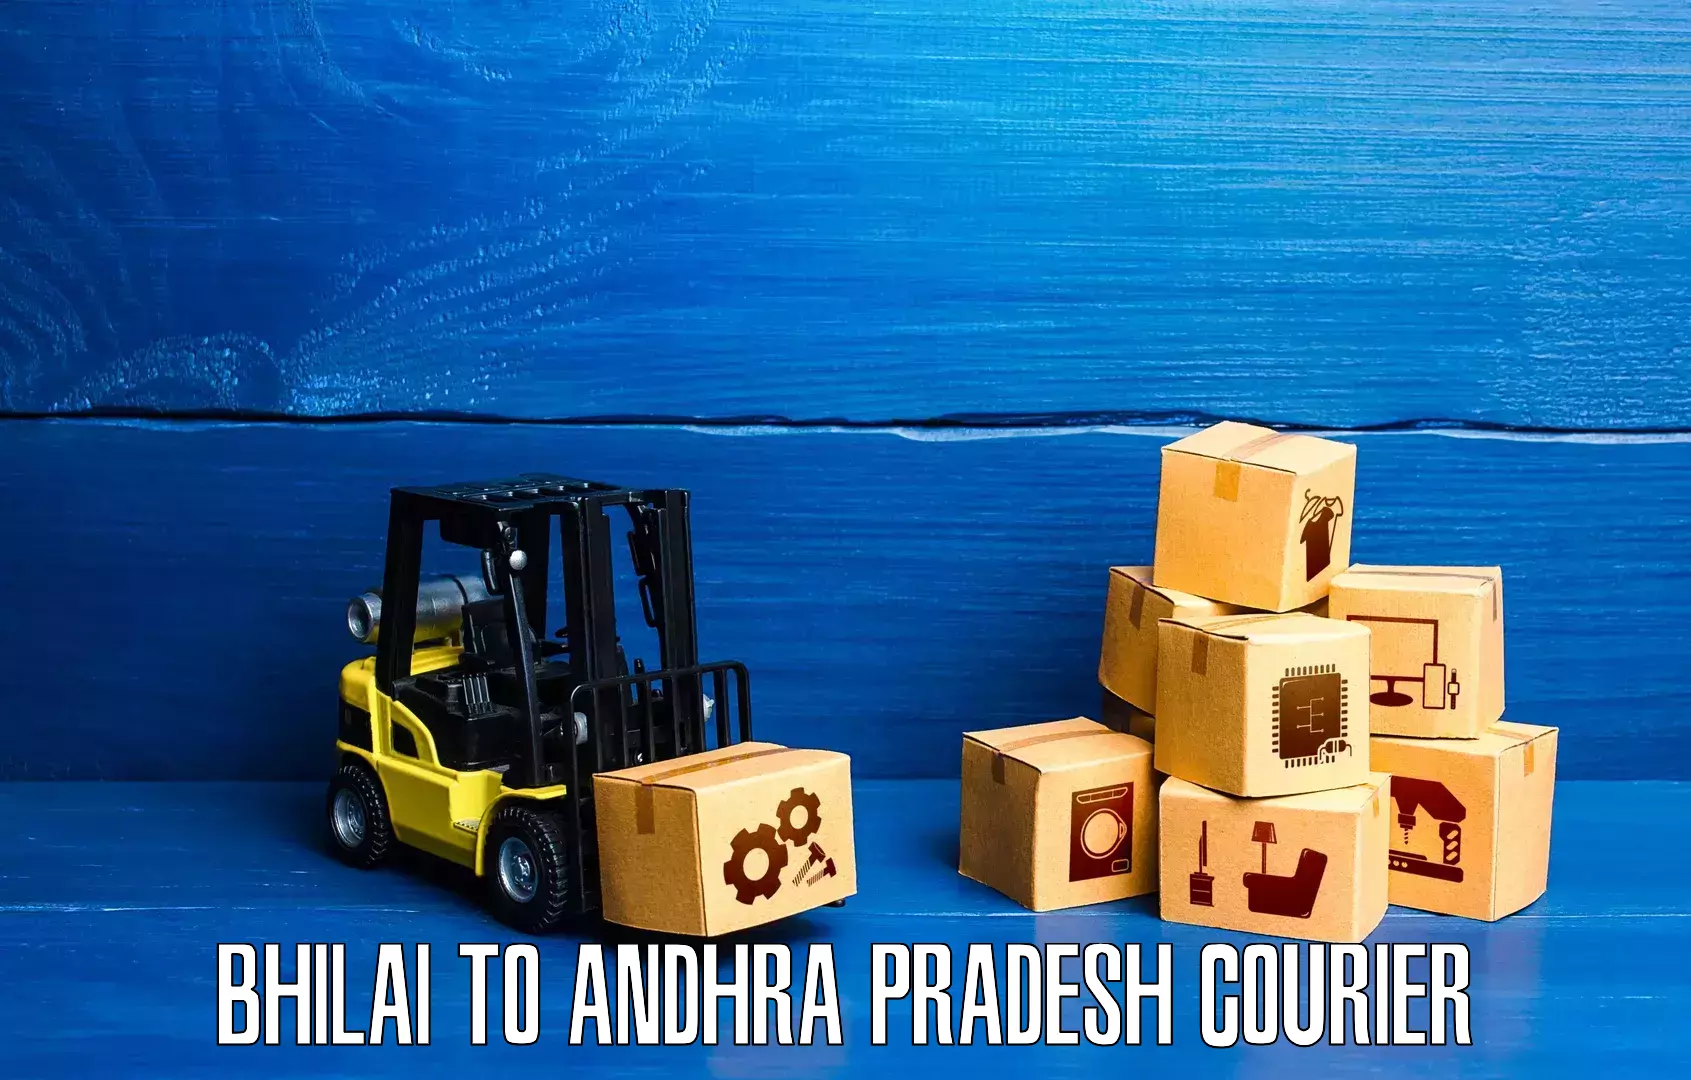 Next-generation courier services Bhilai to Bapatla